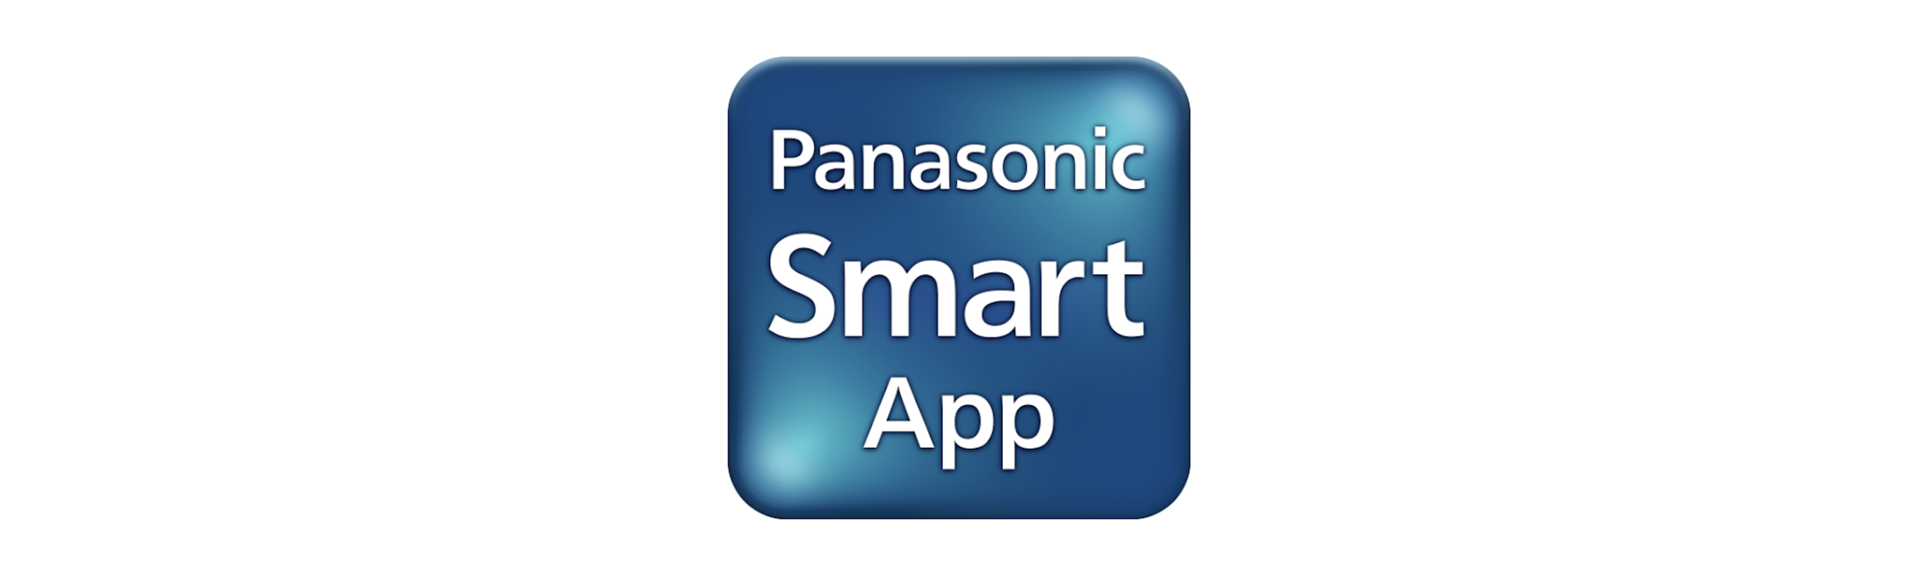 Panasonic Smart App（パナソニックスマートアプリ）は終了しました